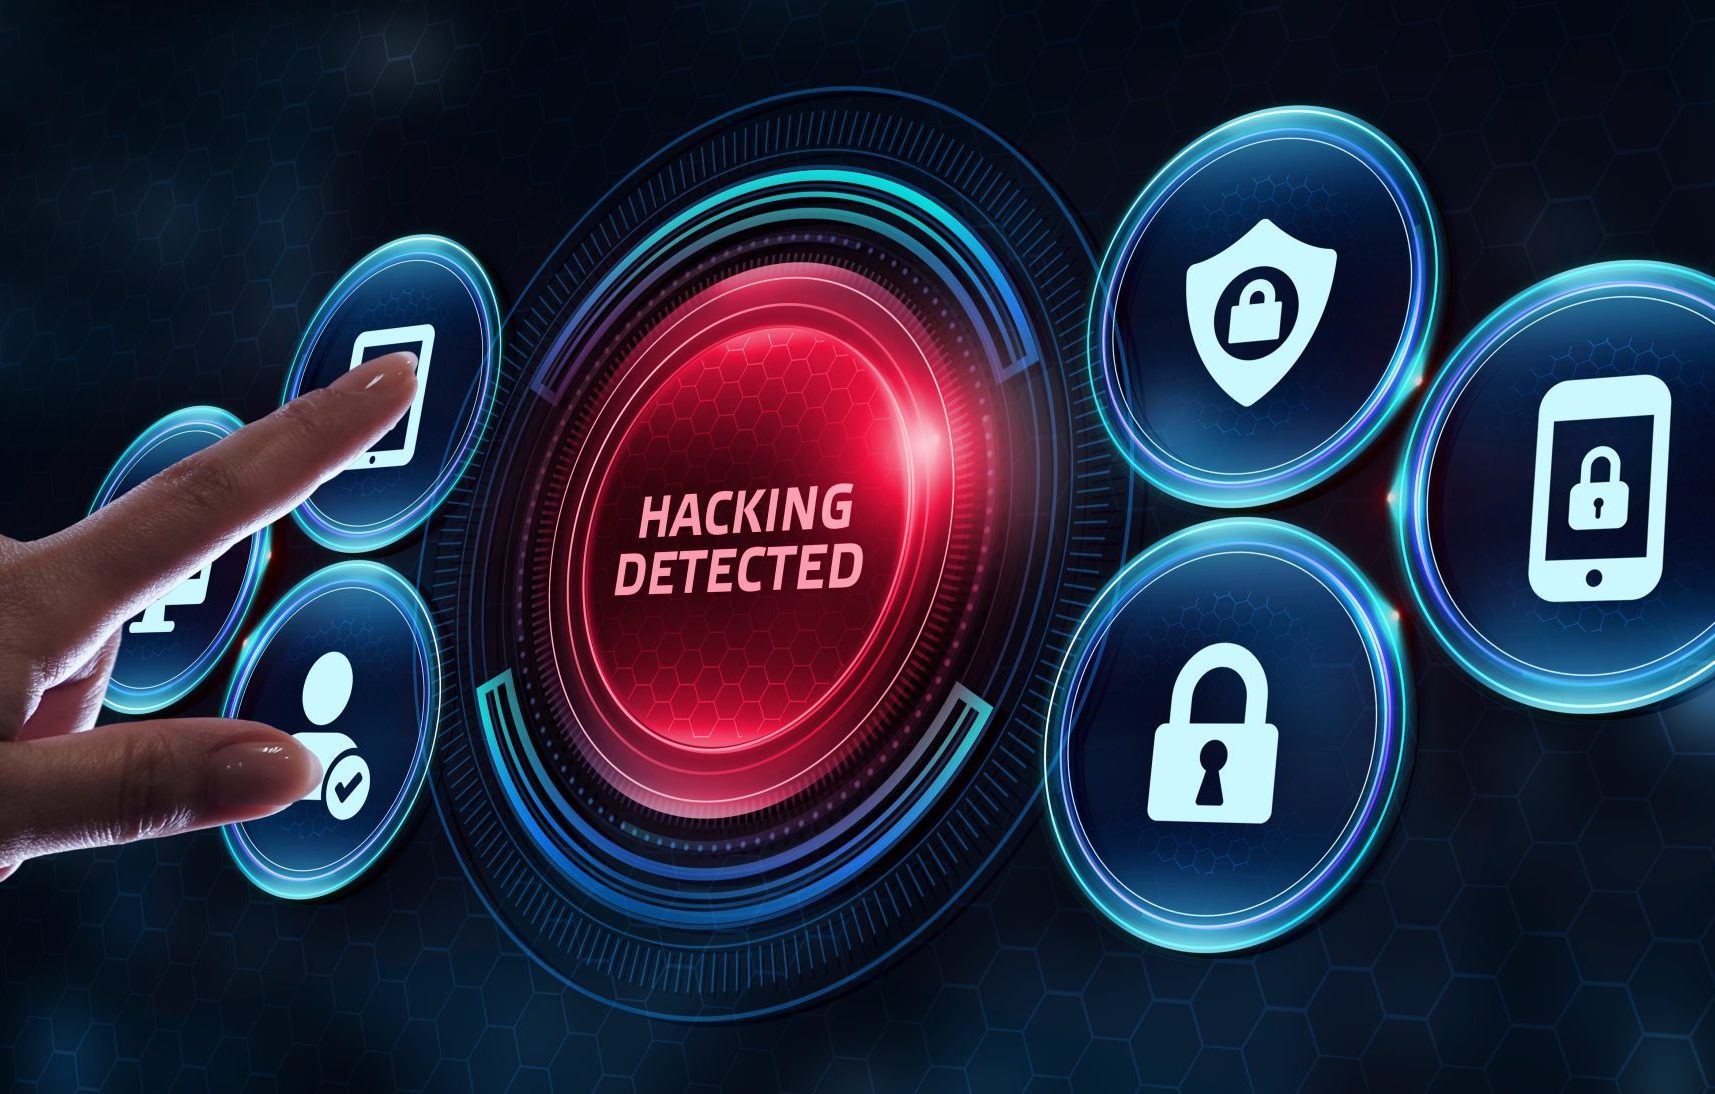 Bilden är ett collage av säkerhetsymboler. I mitten syns en röd knapp med ordet "Hacking detected".